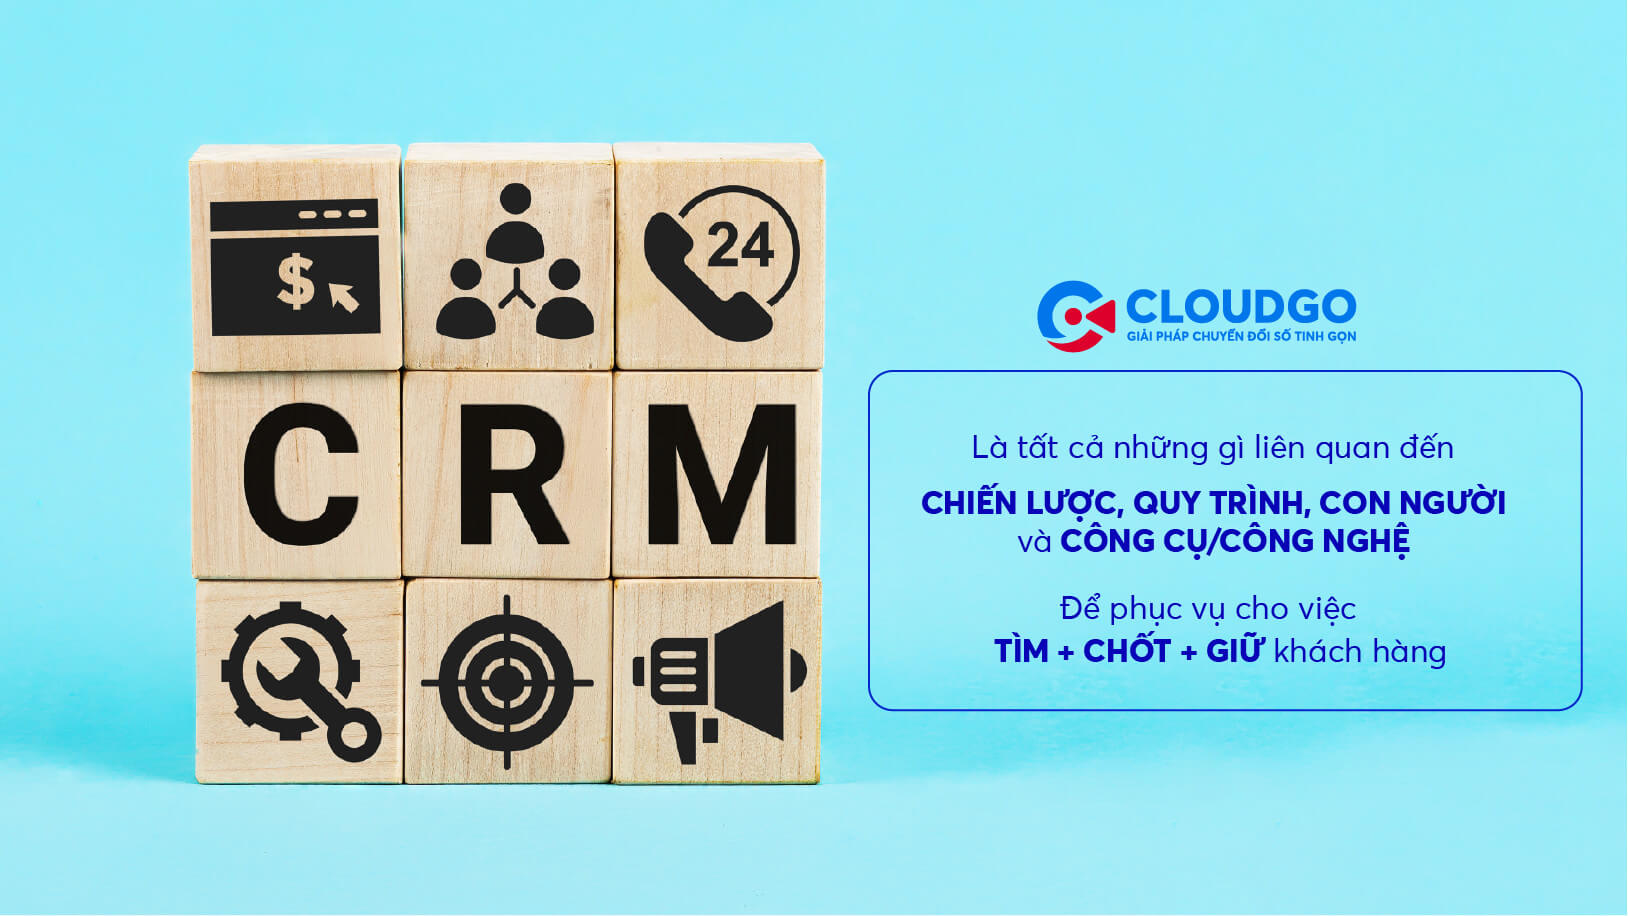 Phần mềm CRM là gì?